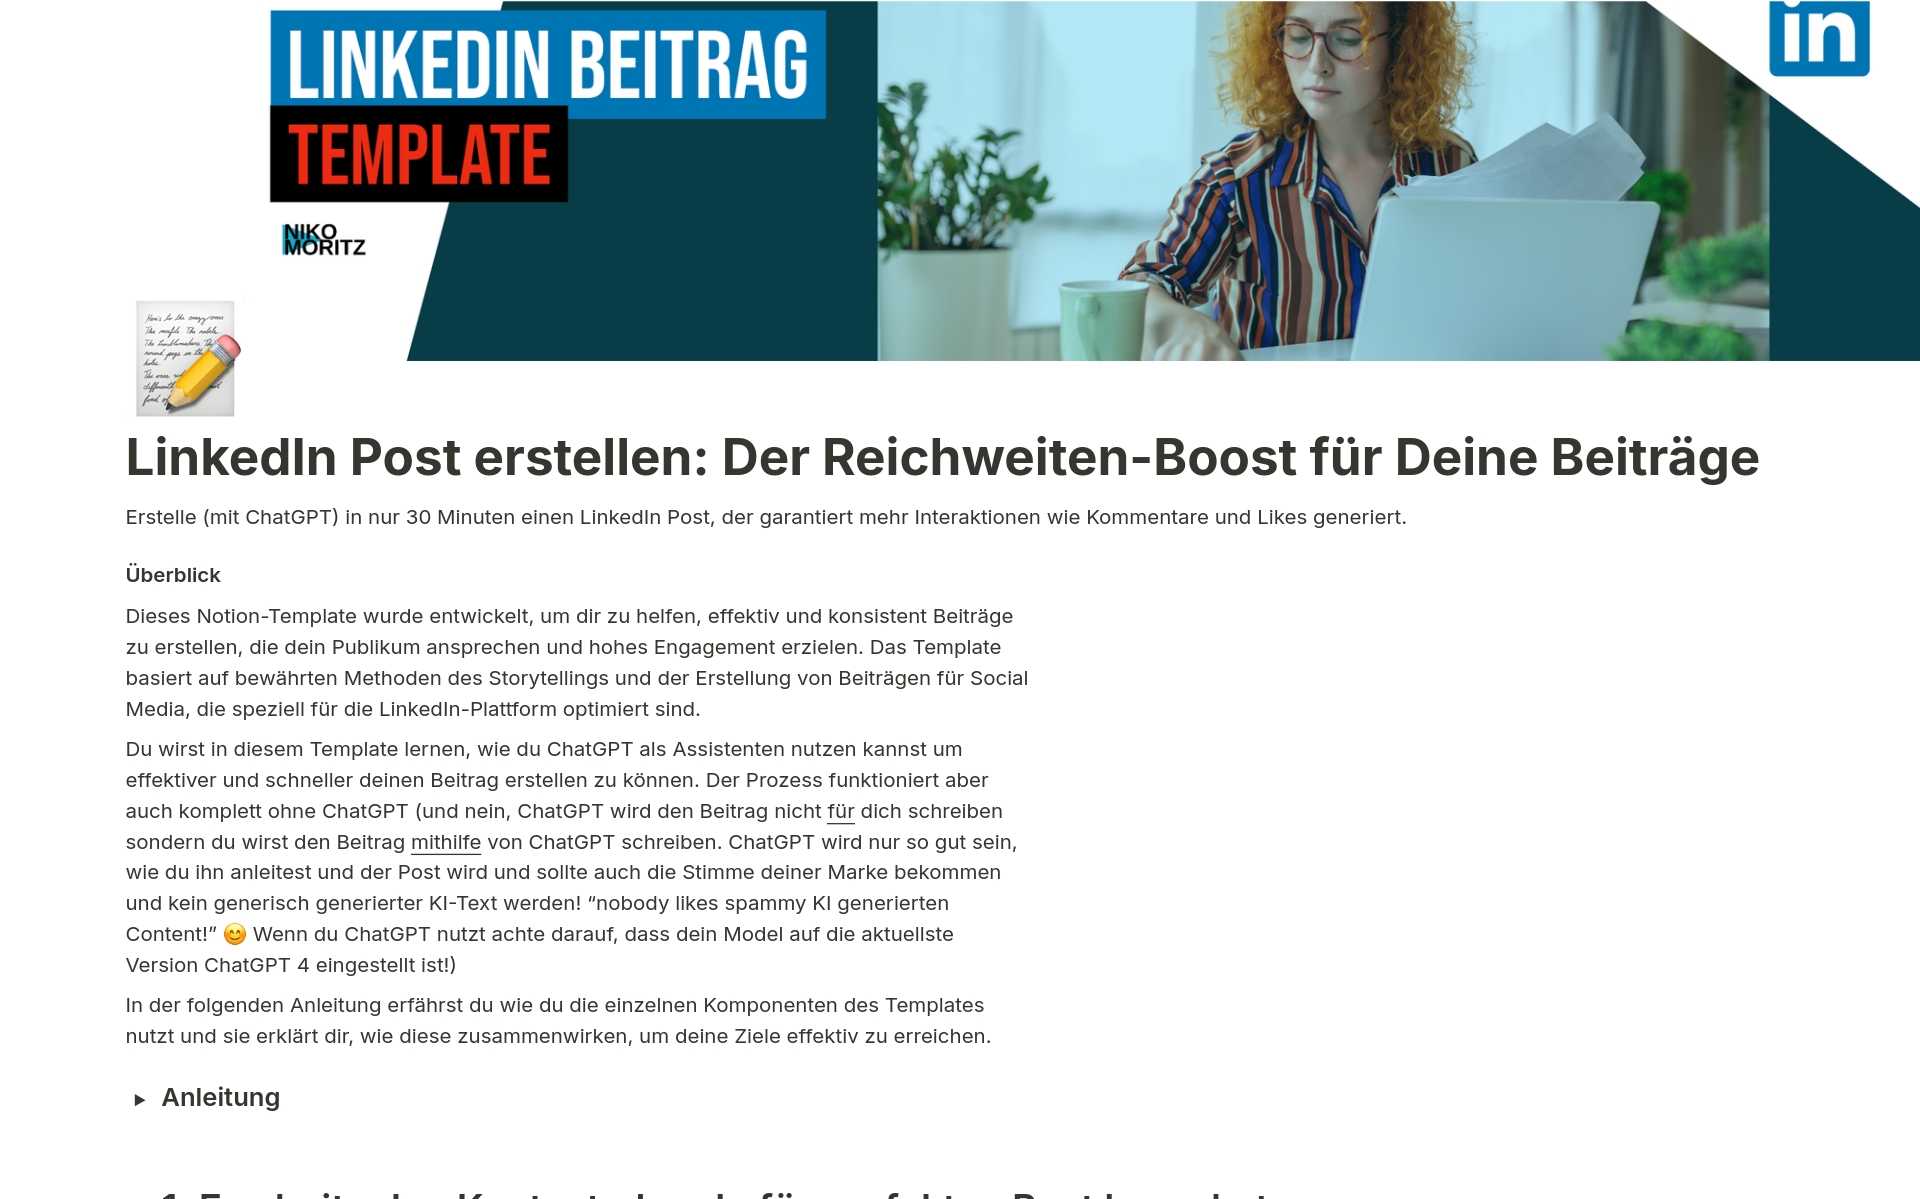 Uma prévia do modelo para LinkedIn Post Reichweiten Boost